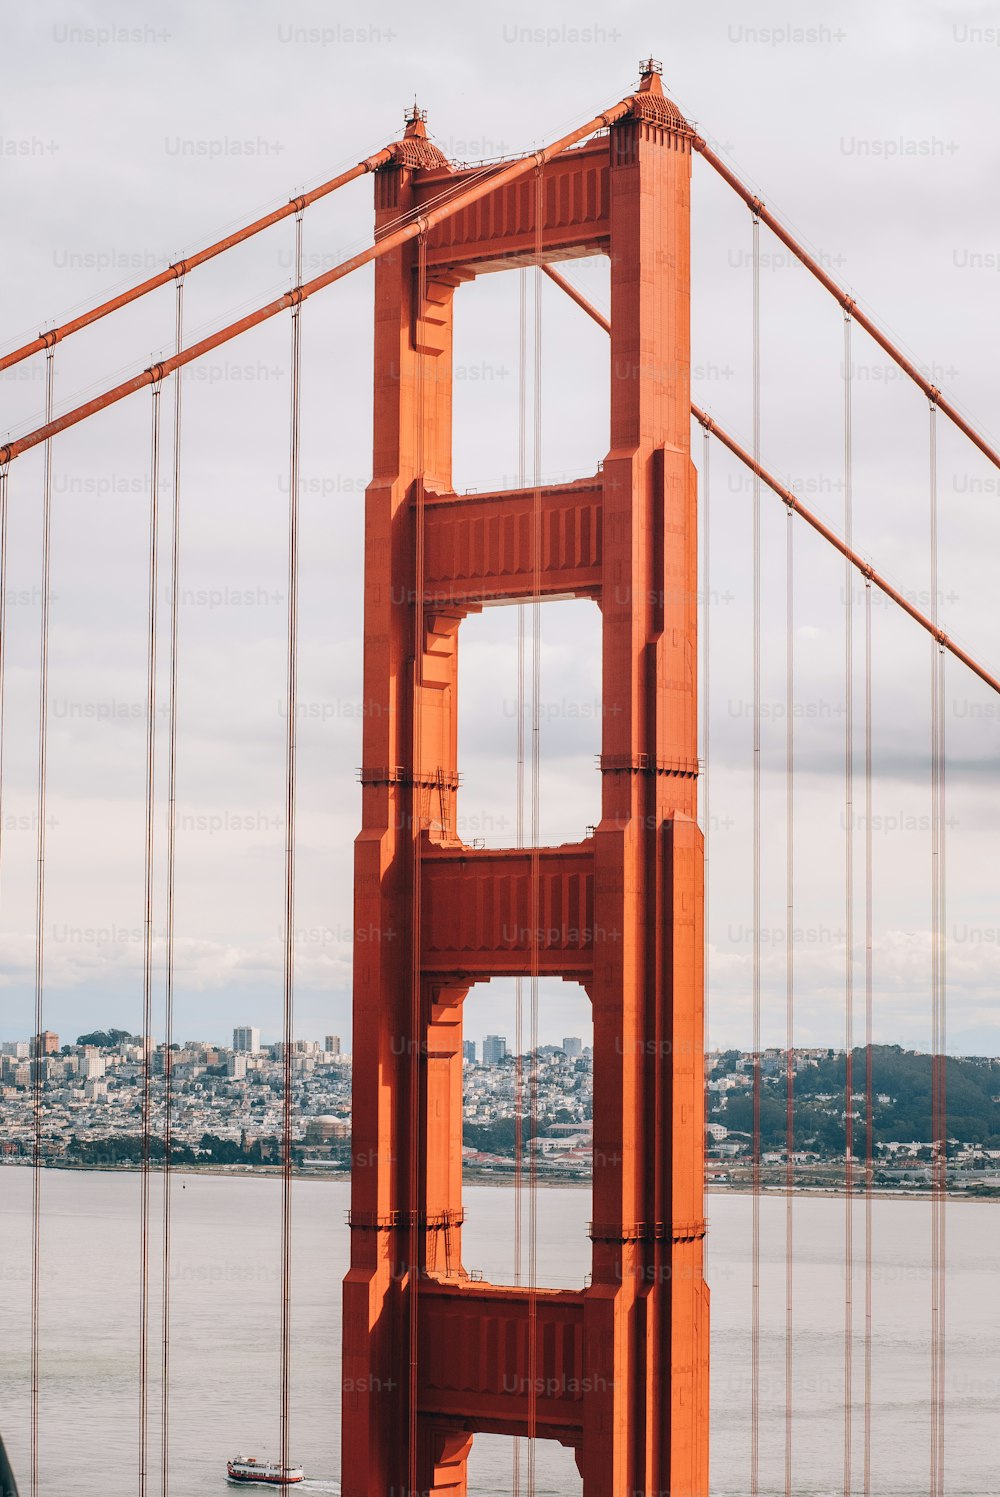 Ein Blick auf die Golden Gate Bridge in San Francisco, Kalifornien